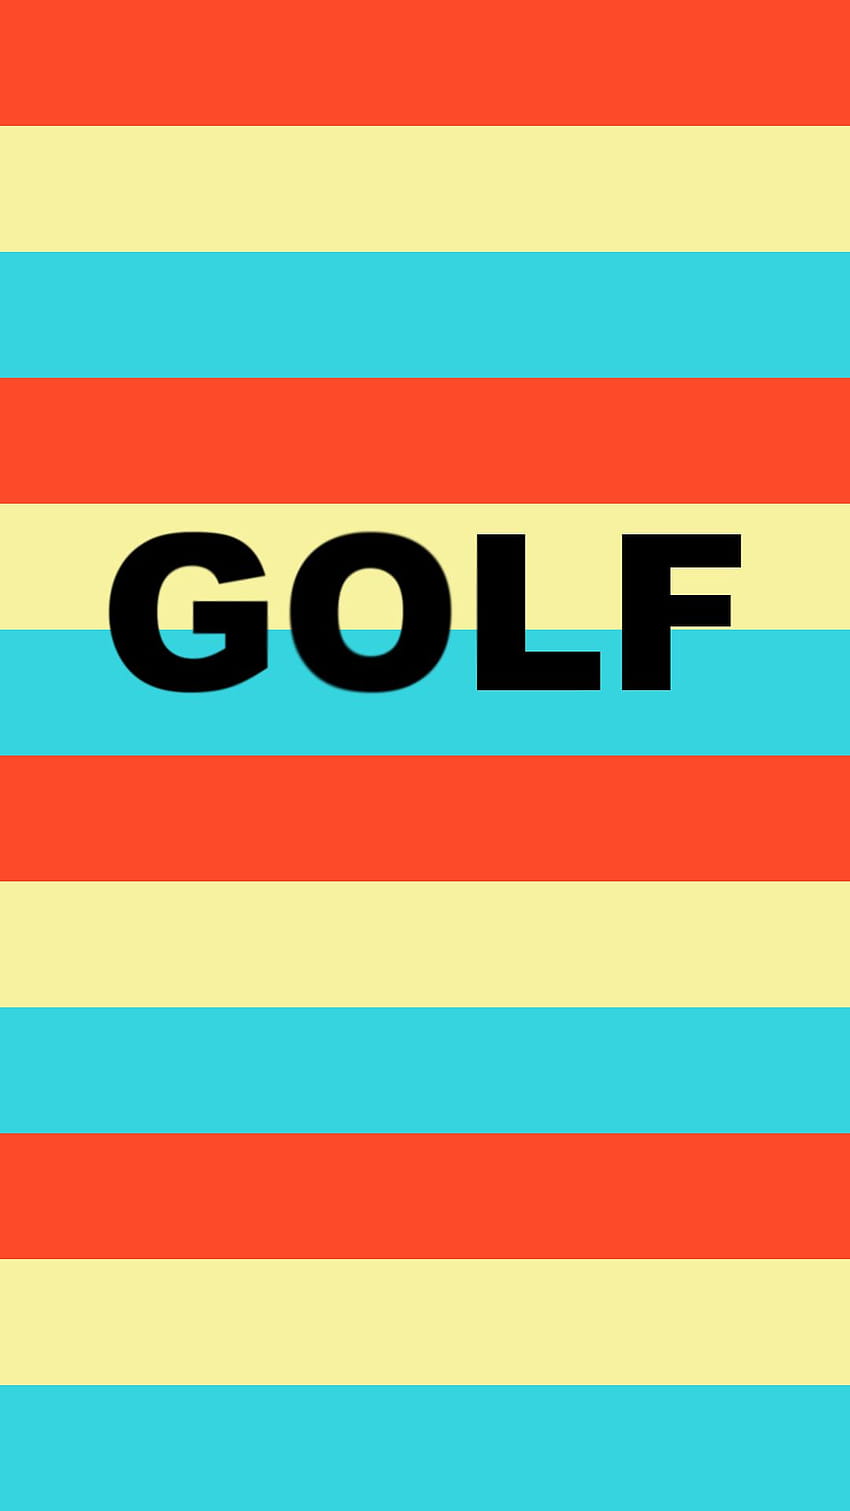 Marco Quarta  Projects  GOLF WANG Golf Le Fleur HD wallpaper  Pxfuel